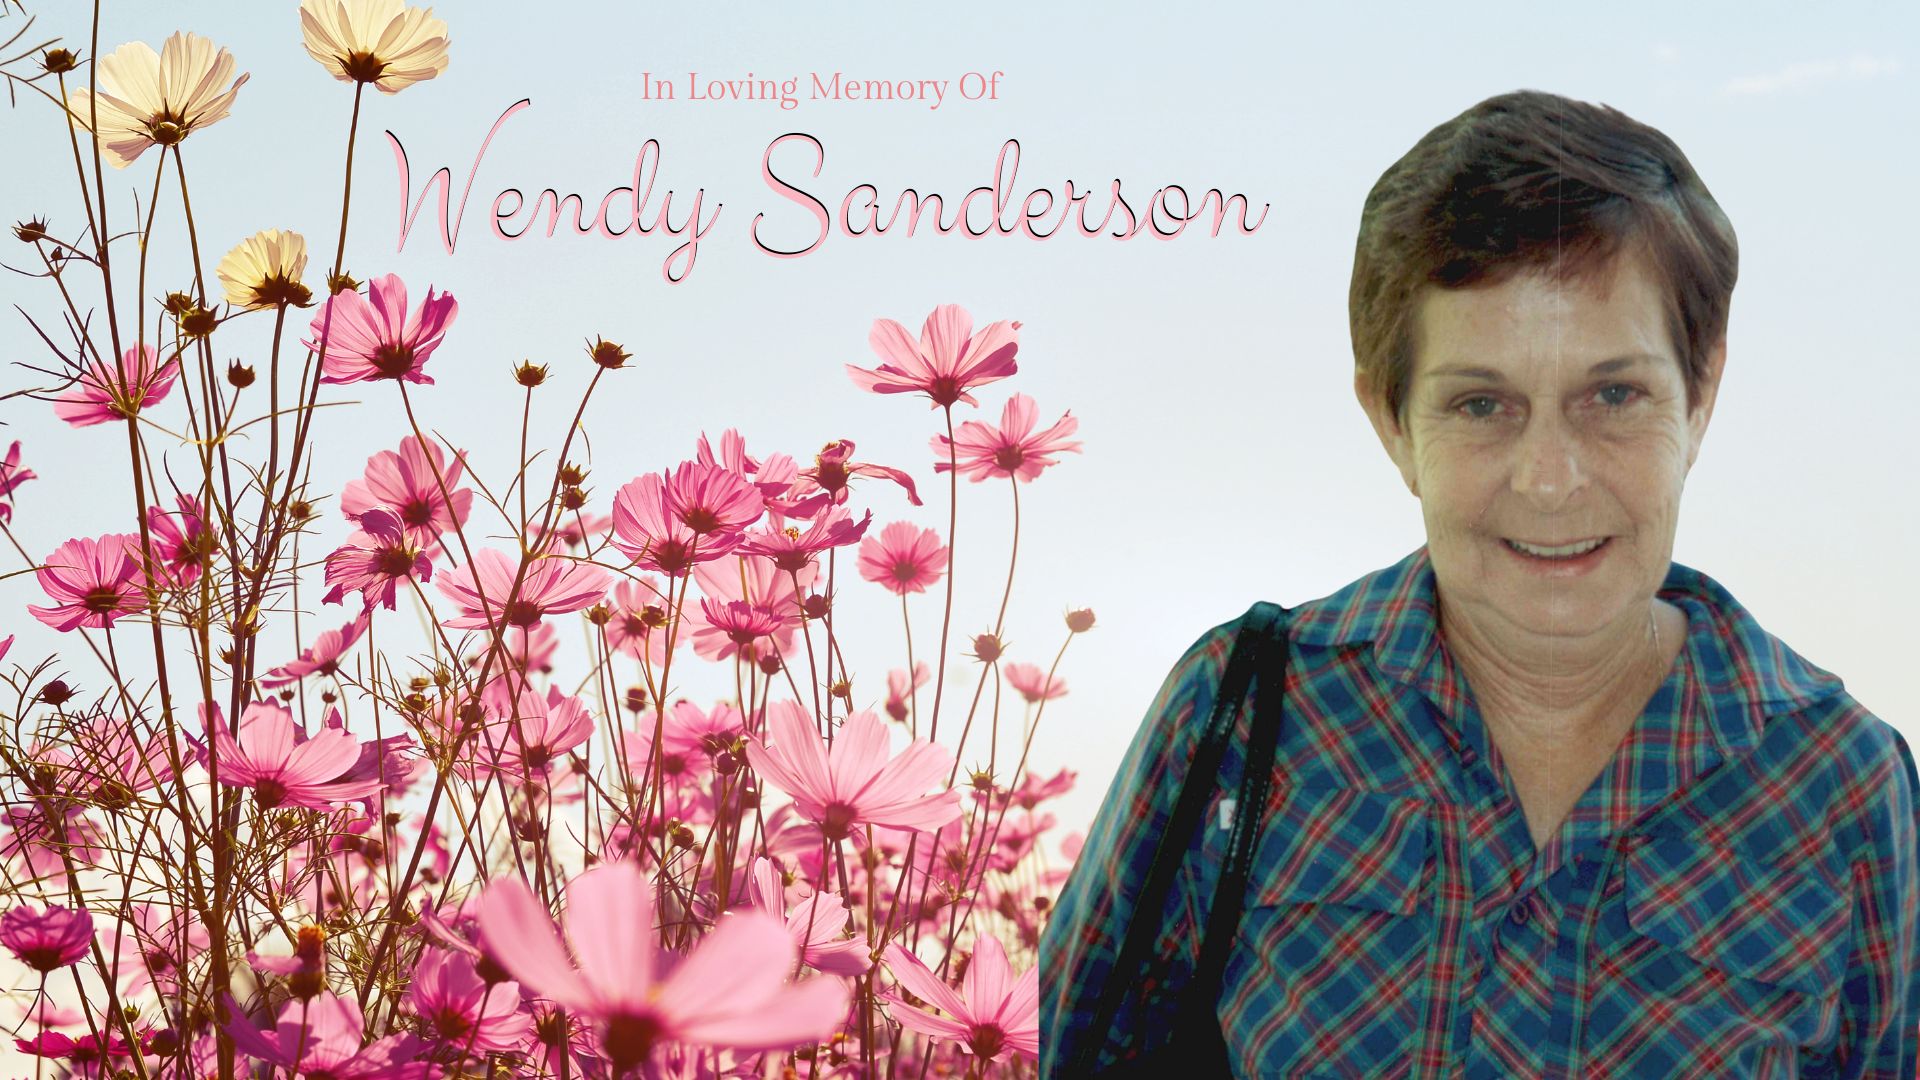 Wendy Sanderson